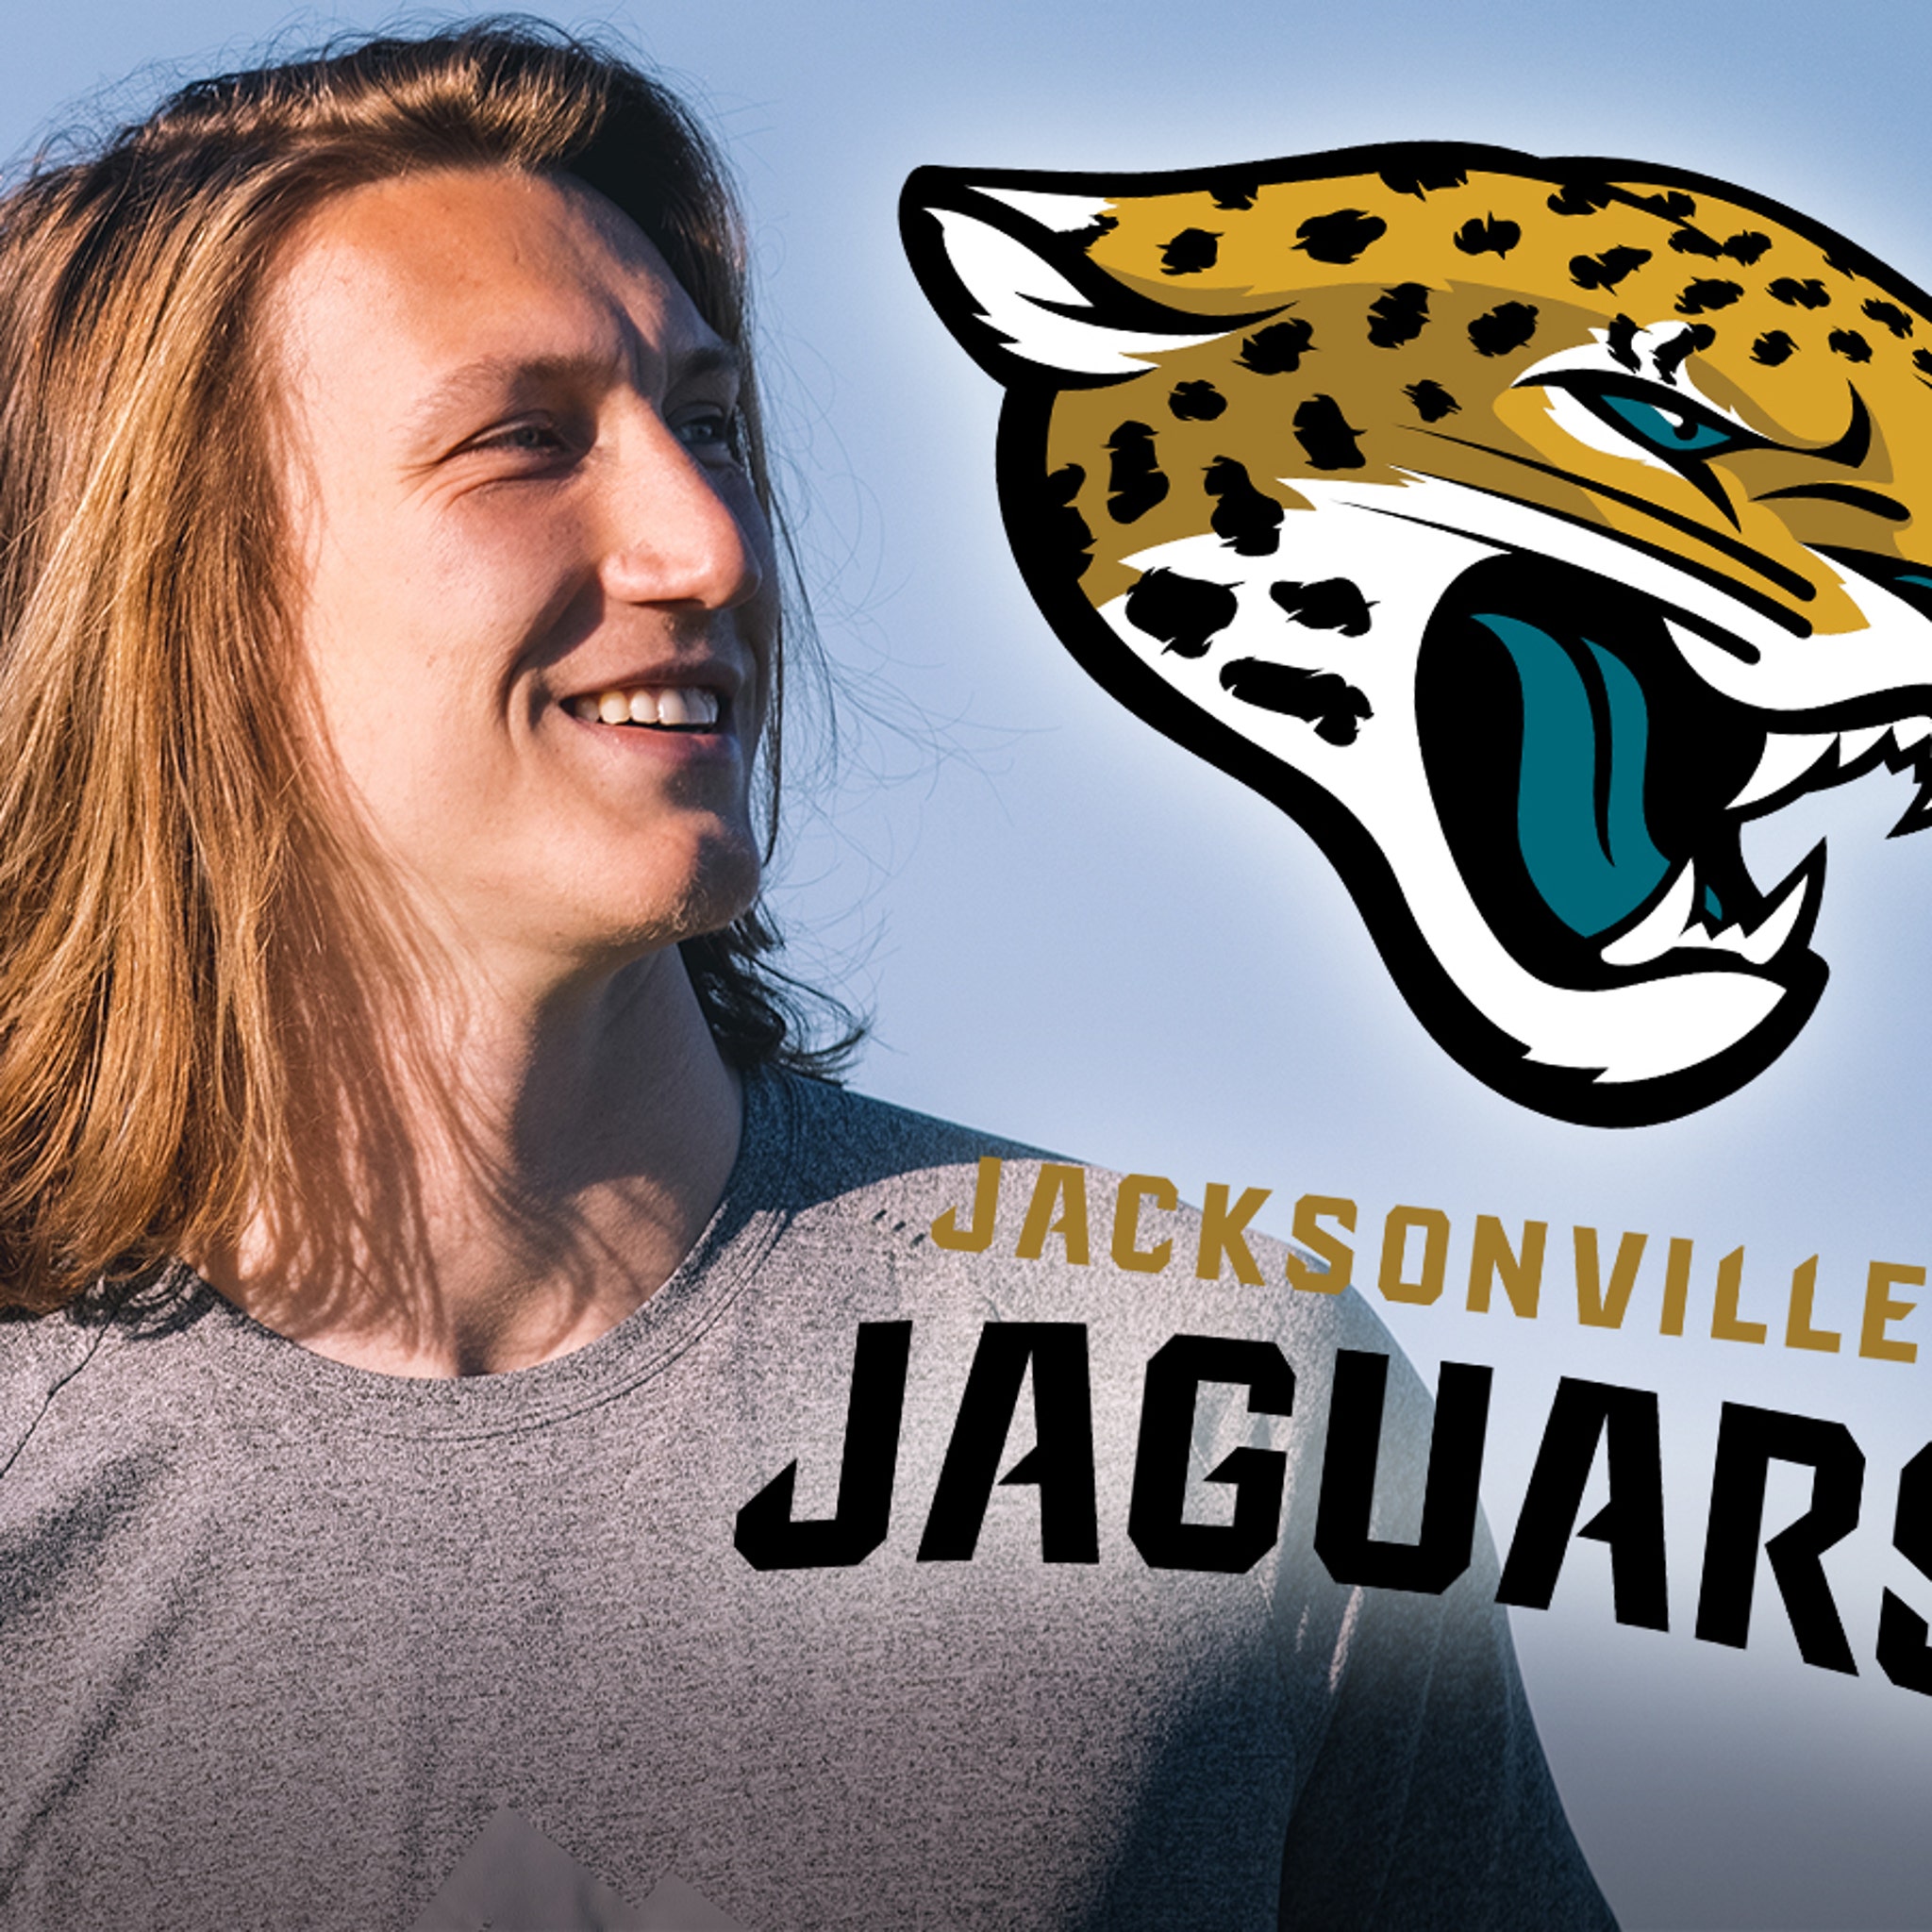 Trevor Lawrence selected No. 1 by Jacksonville Jaguars in NFL draft